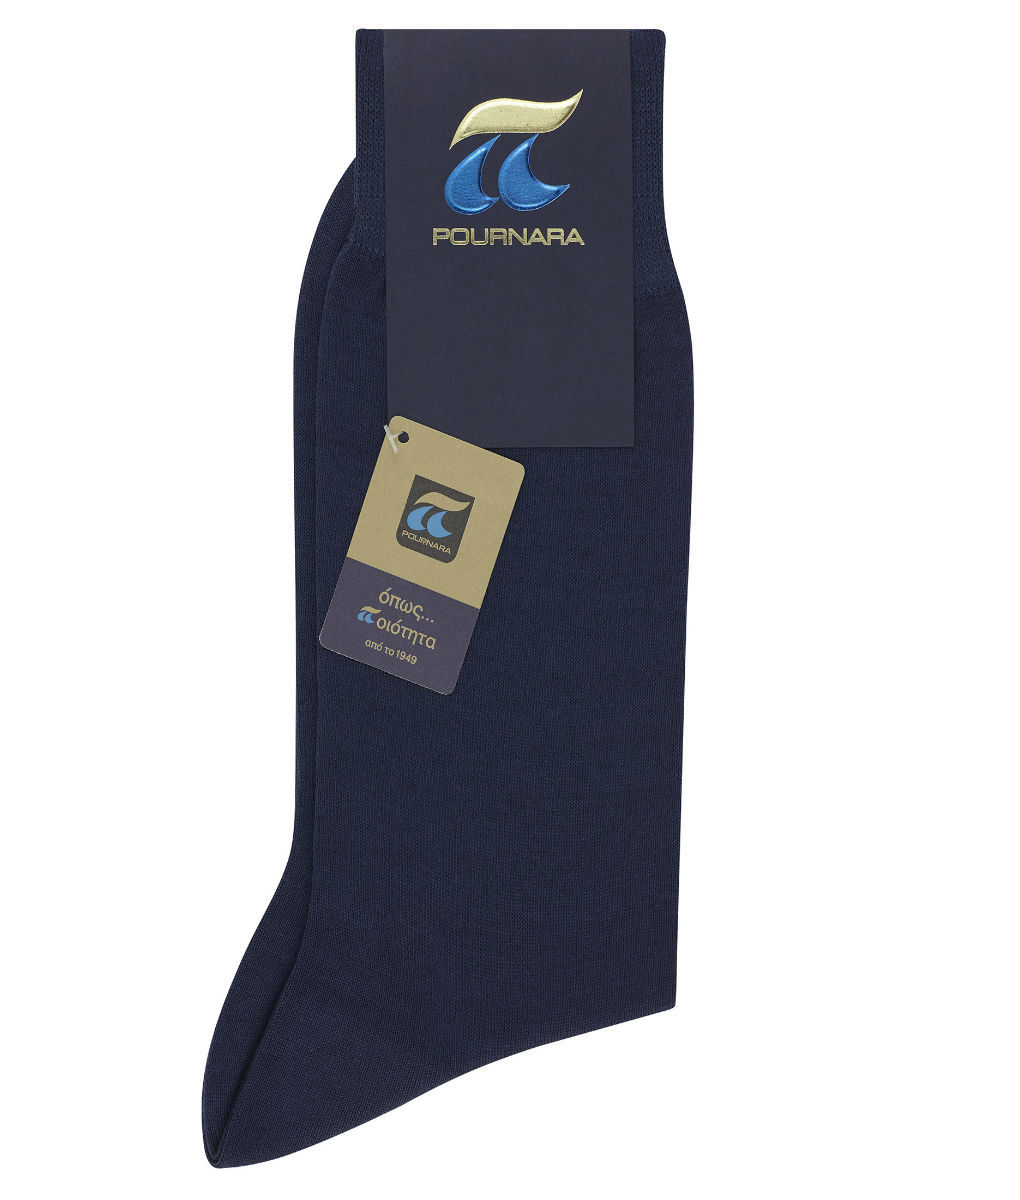 Κάλτσα ανδρική 100% Μερσεριζέ βαμβάκι μπλε ραφ Πουρνάρας P110-88 P110C Ραφ